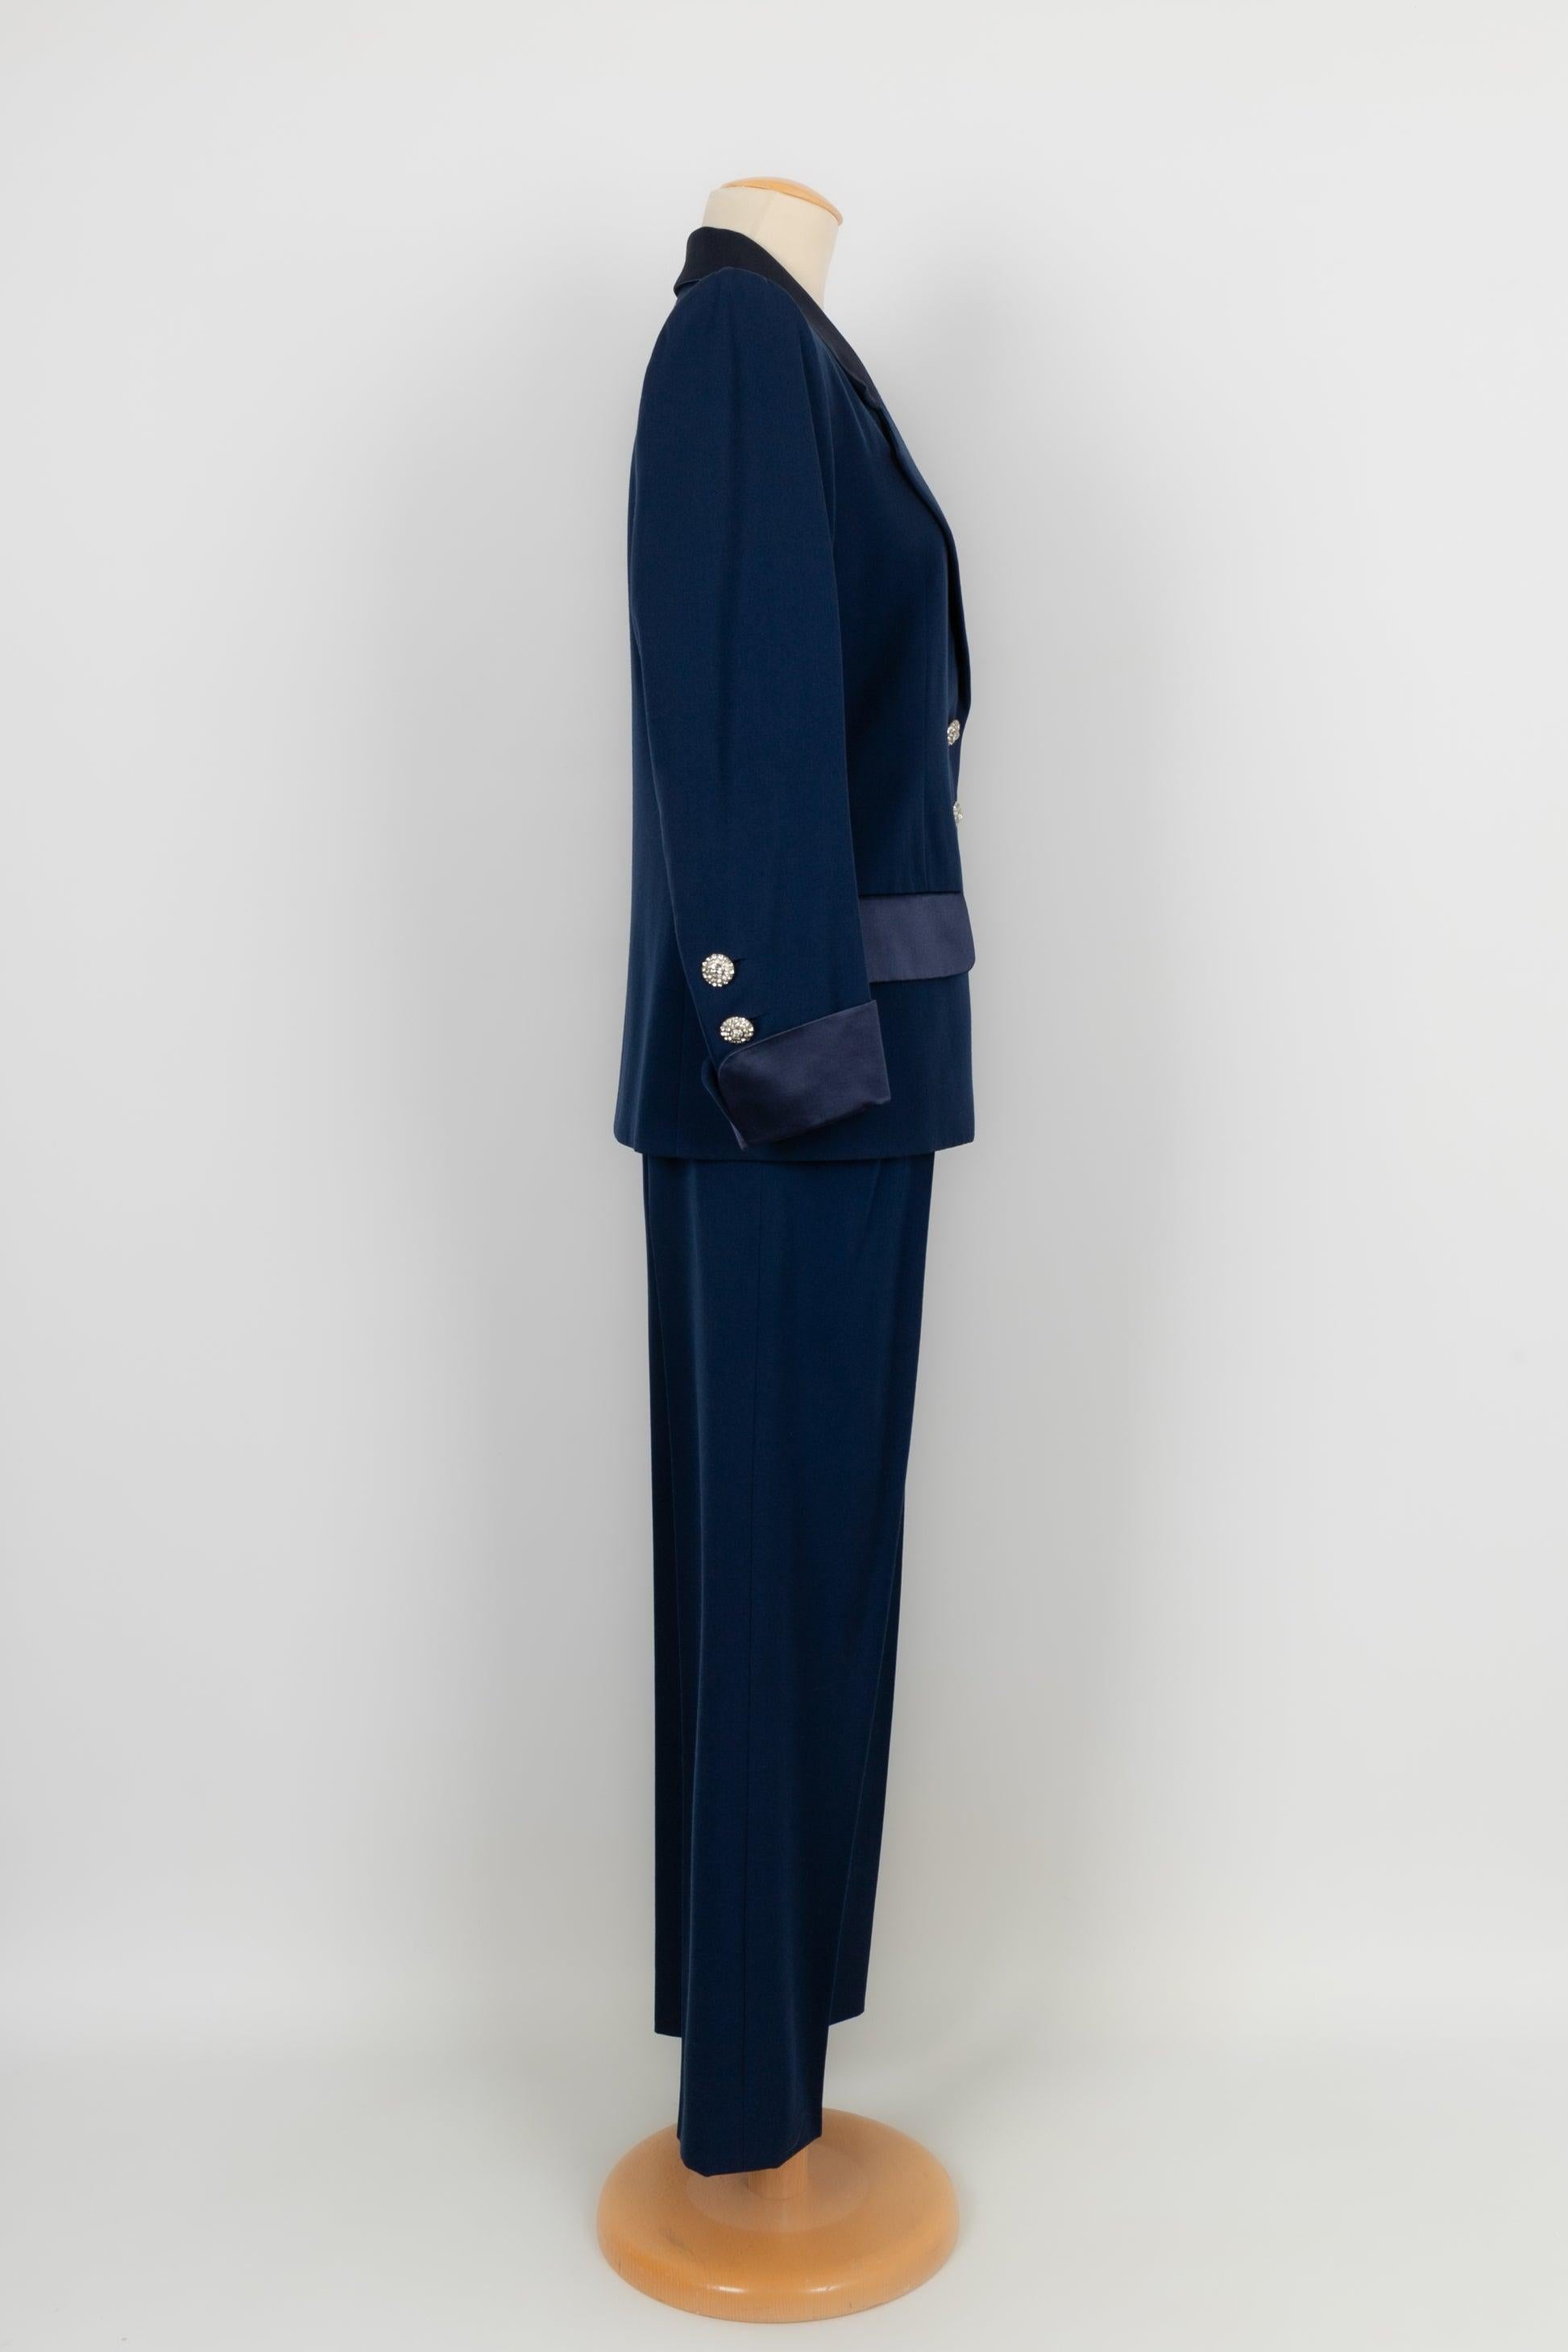 Yves Saint Laurent Blue Wool Pant Suit Haute Couture 36FR/38FR 1